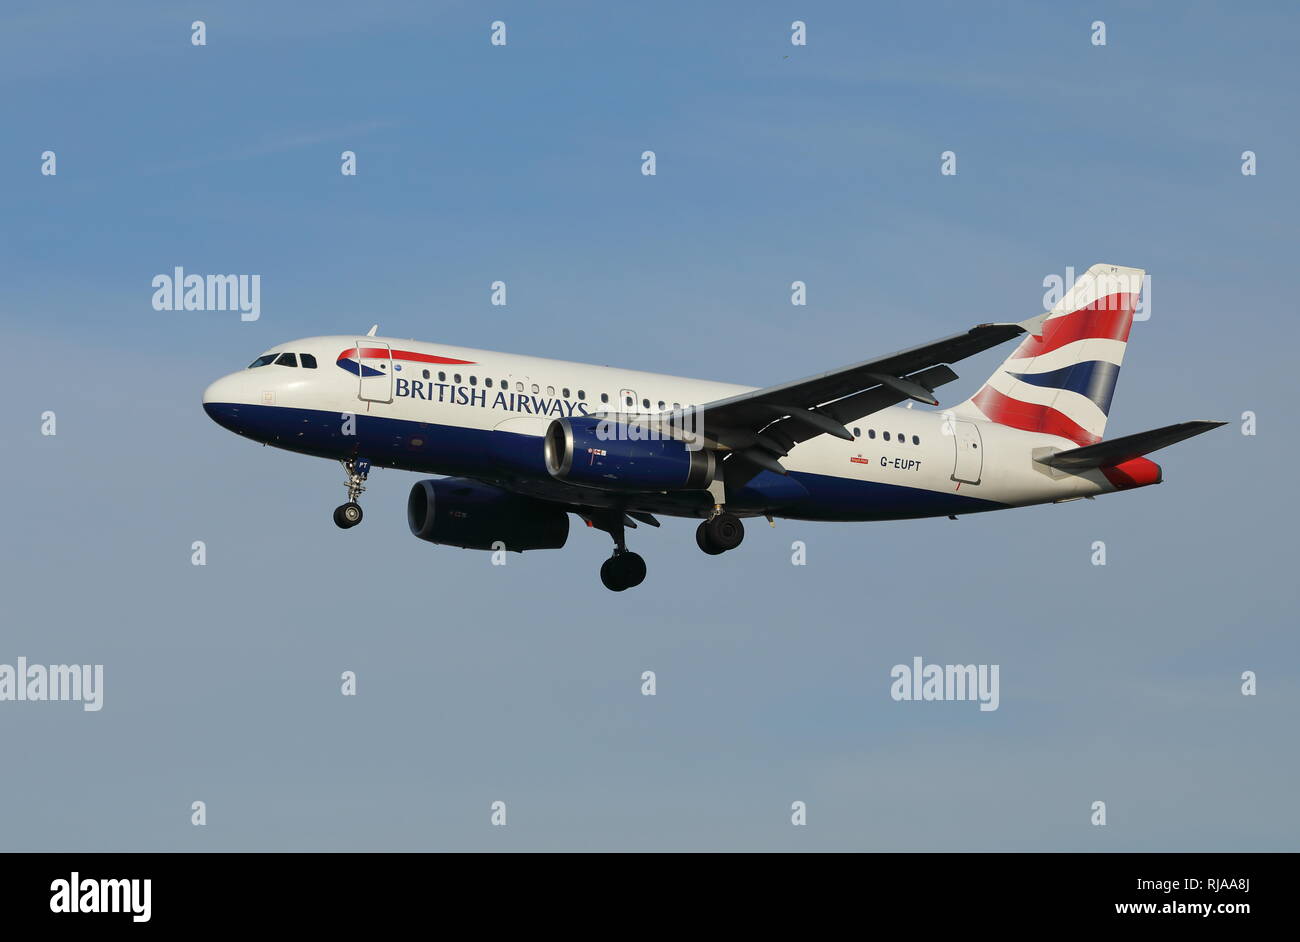 British Airways Airbus A319-Passagierflugzeugen, Reg.-Nr. G-Eupt. Stockfoto